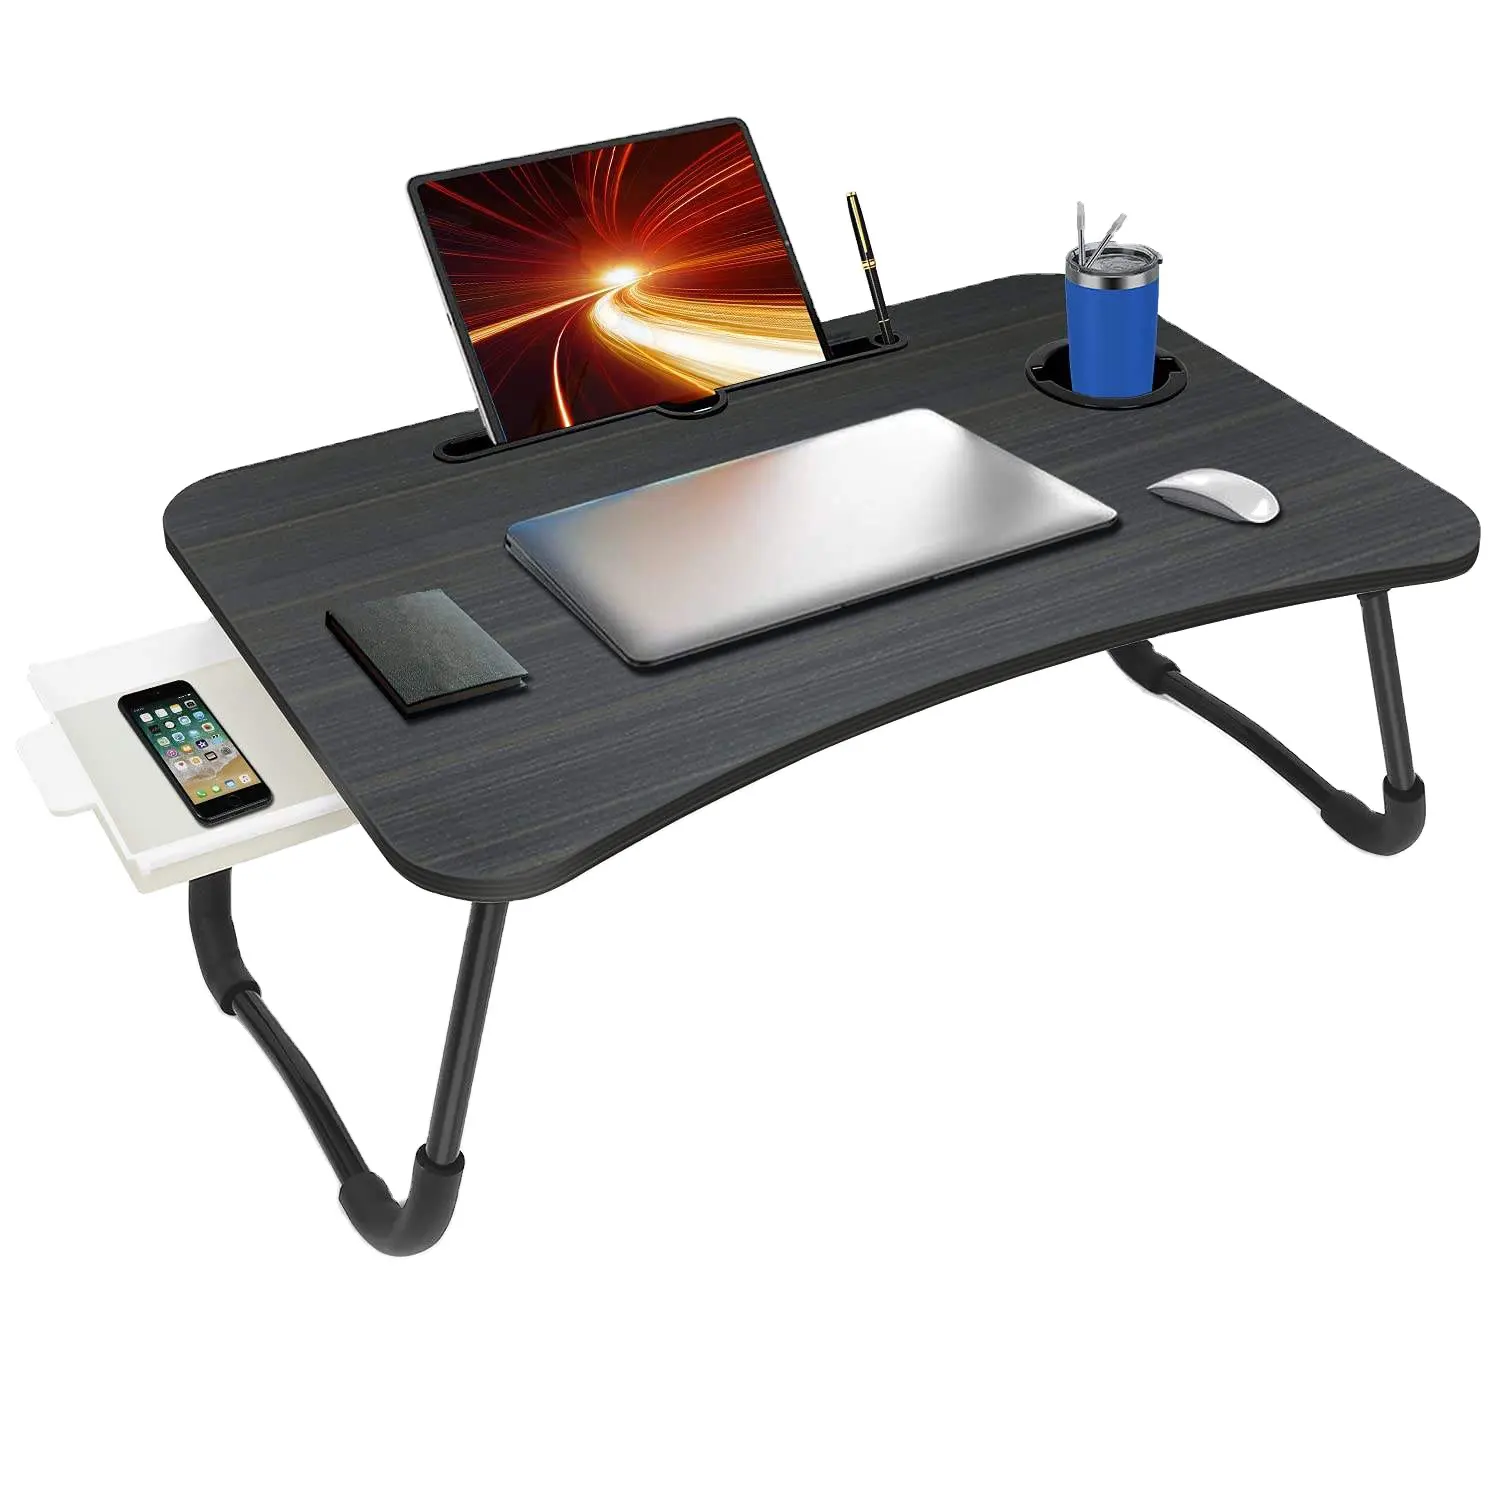 Faltbarer Computer tisch Buntes Design Klappbarer einfacher Tisch Modernes Arbeits bett Schreibtisch Laptop Tisch für Home Office